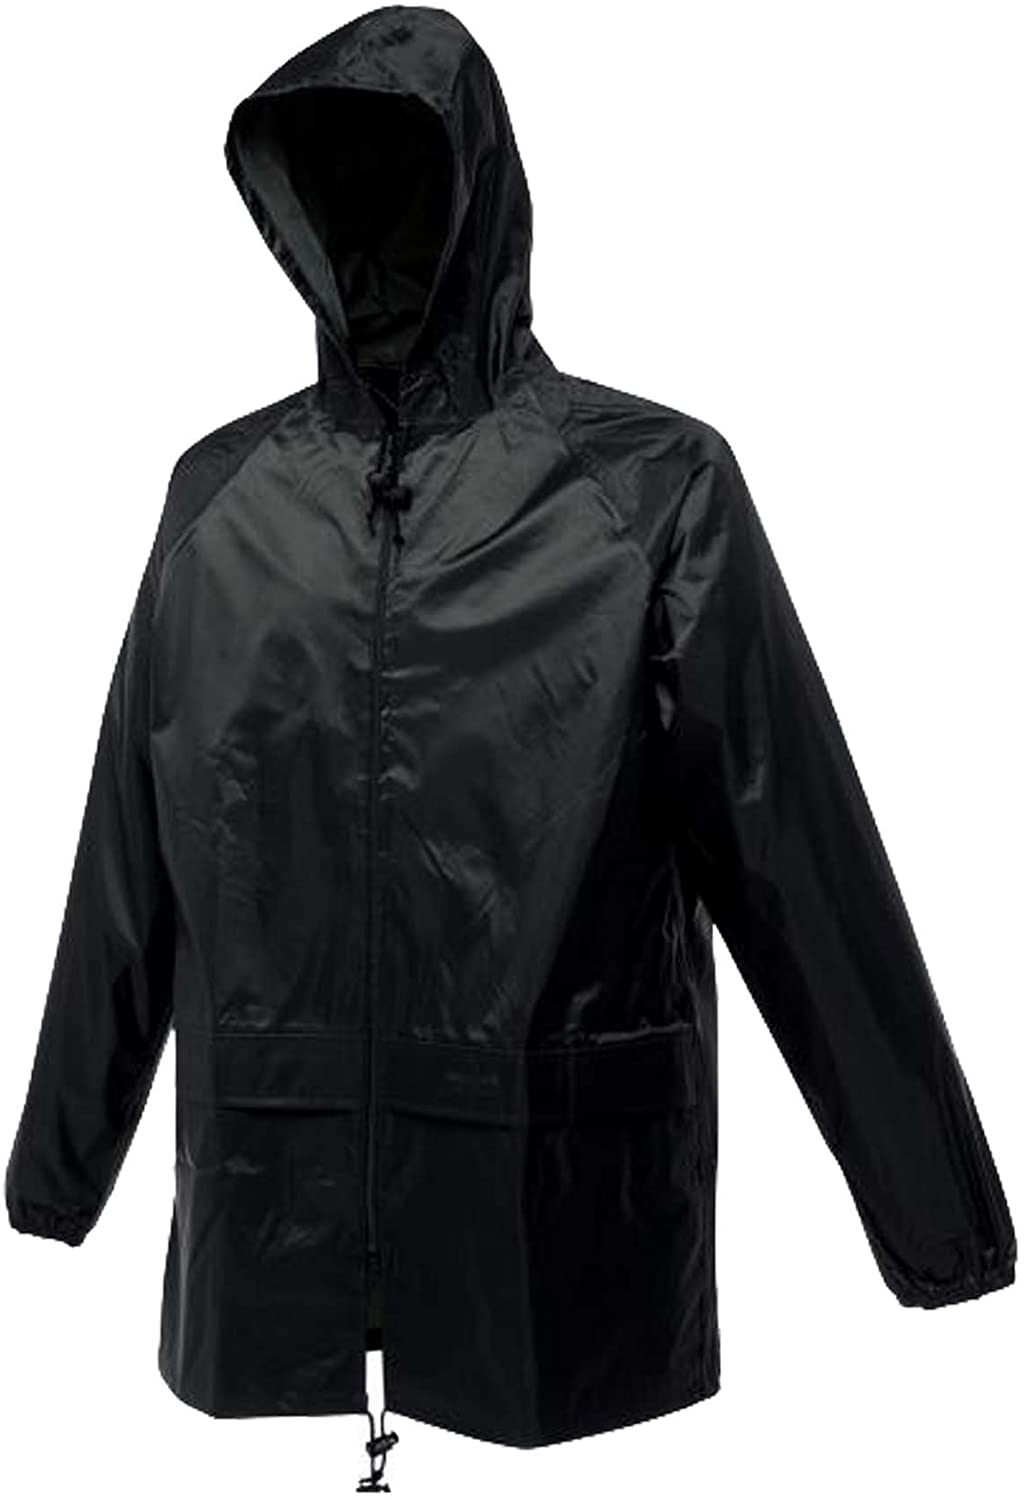 Regatta Stormbreak Waterproof Jacket Taped Seams Rain Coat